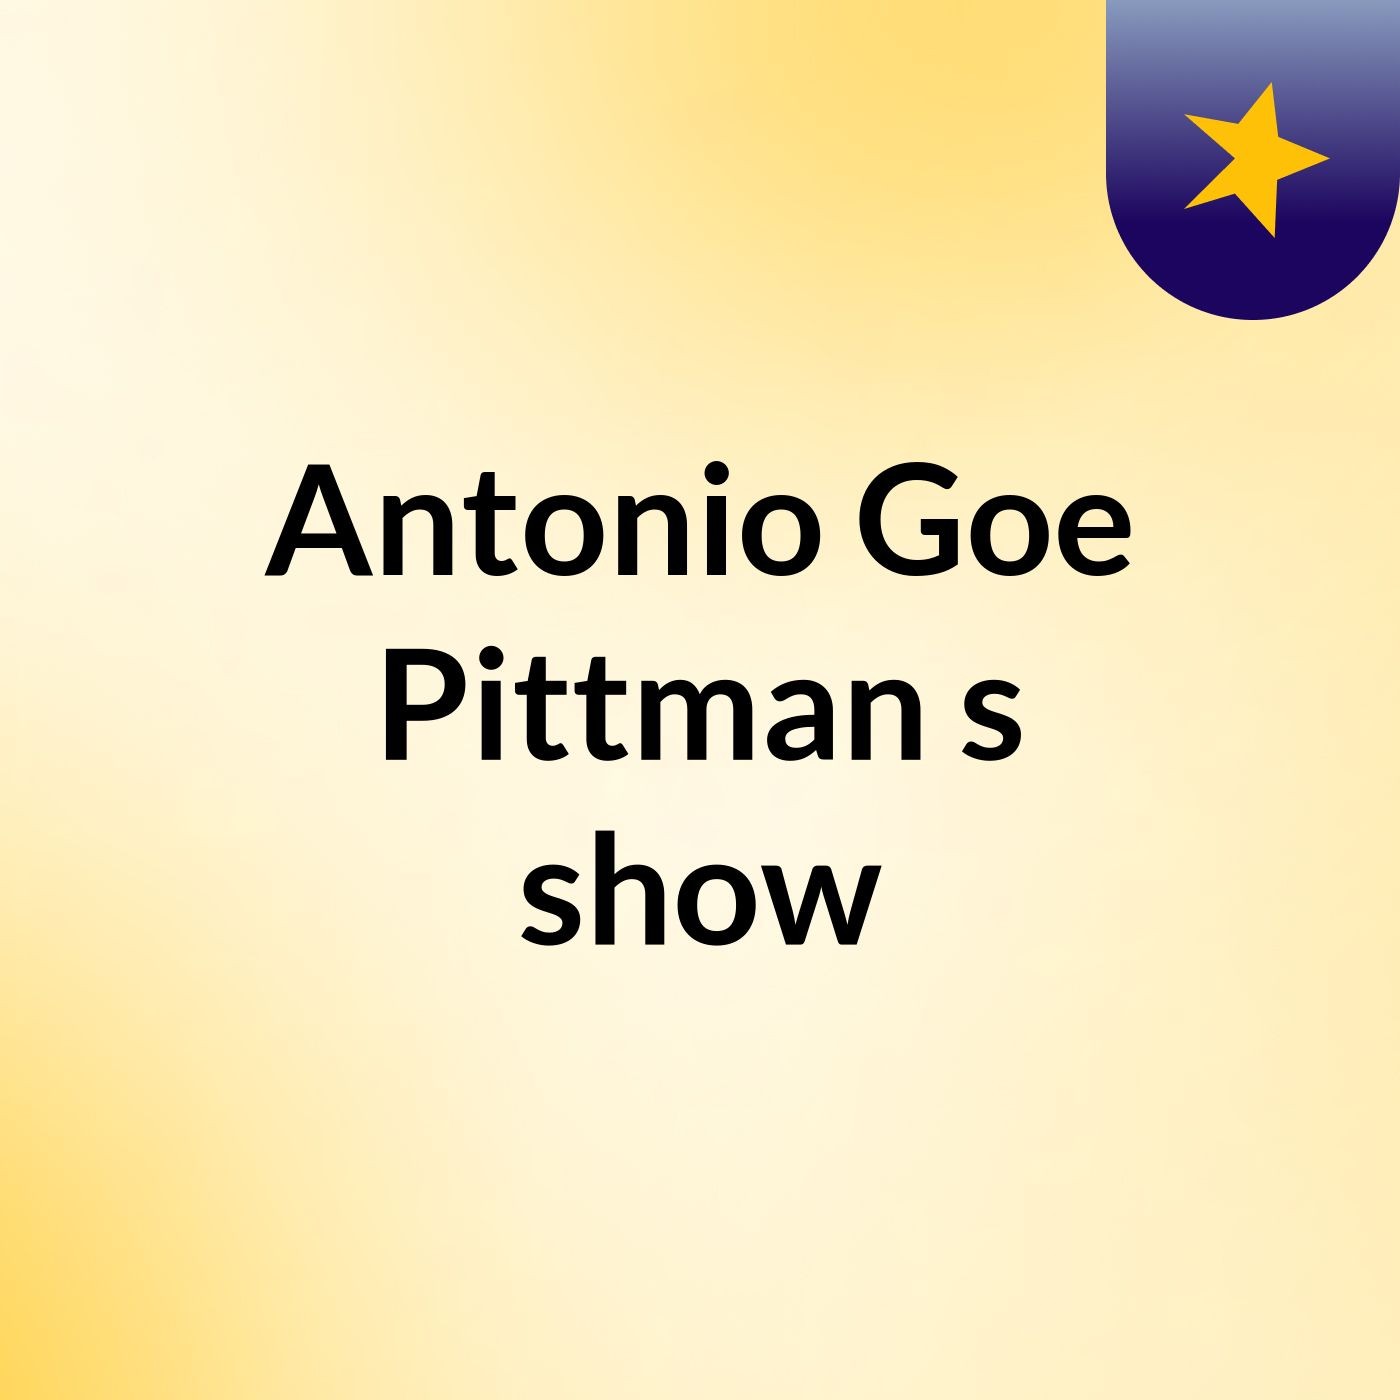 Antonio Goe Pittman's show